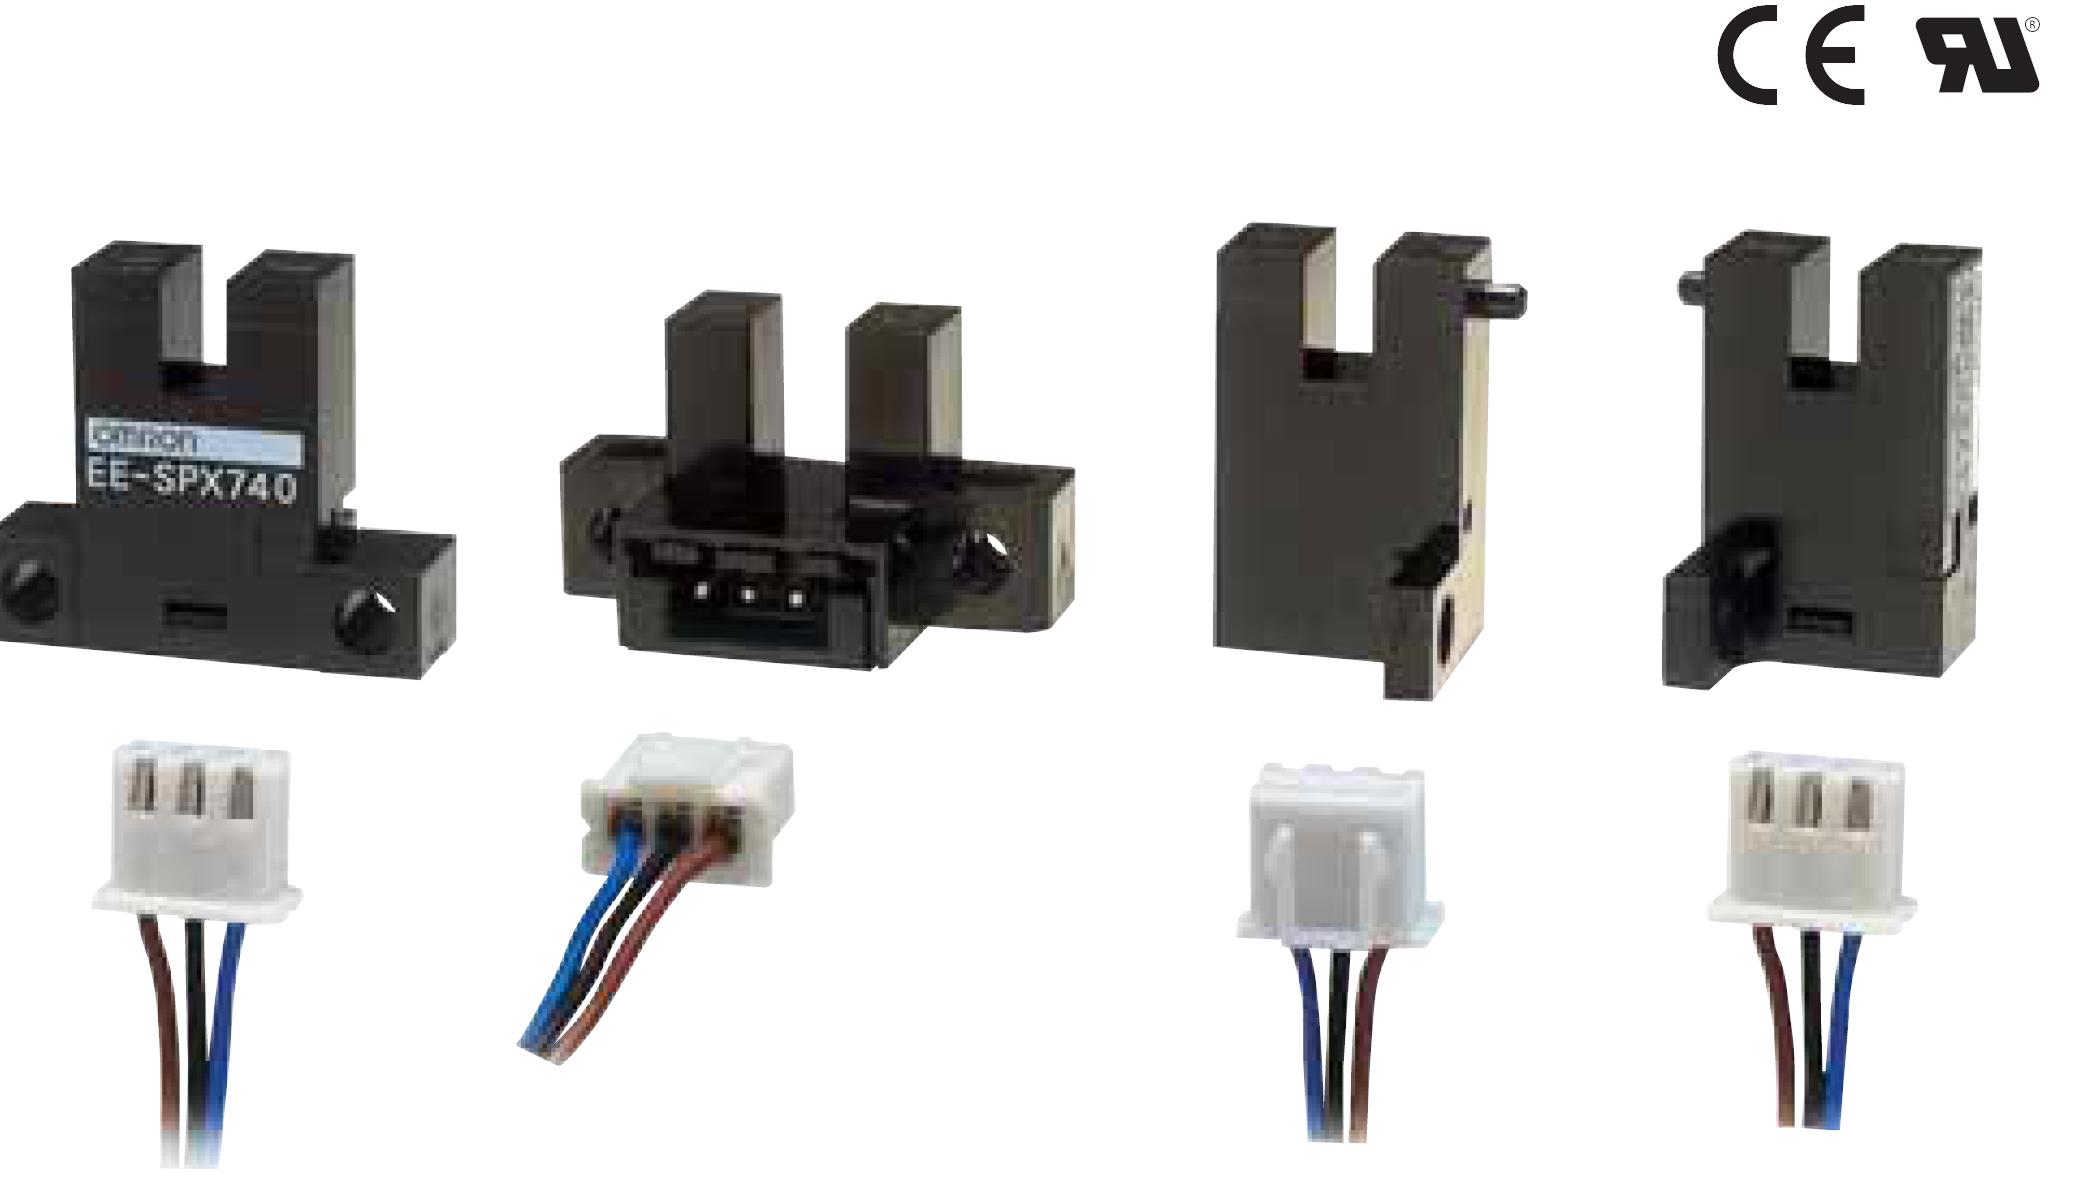 凹槽型接插件型光电传感器串行编码器：17位对值
欧姆龙EE-SPX741